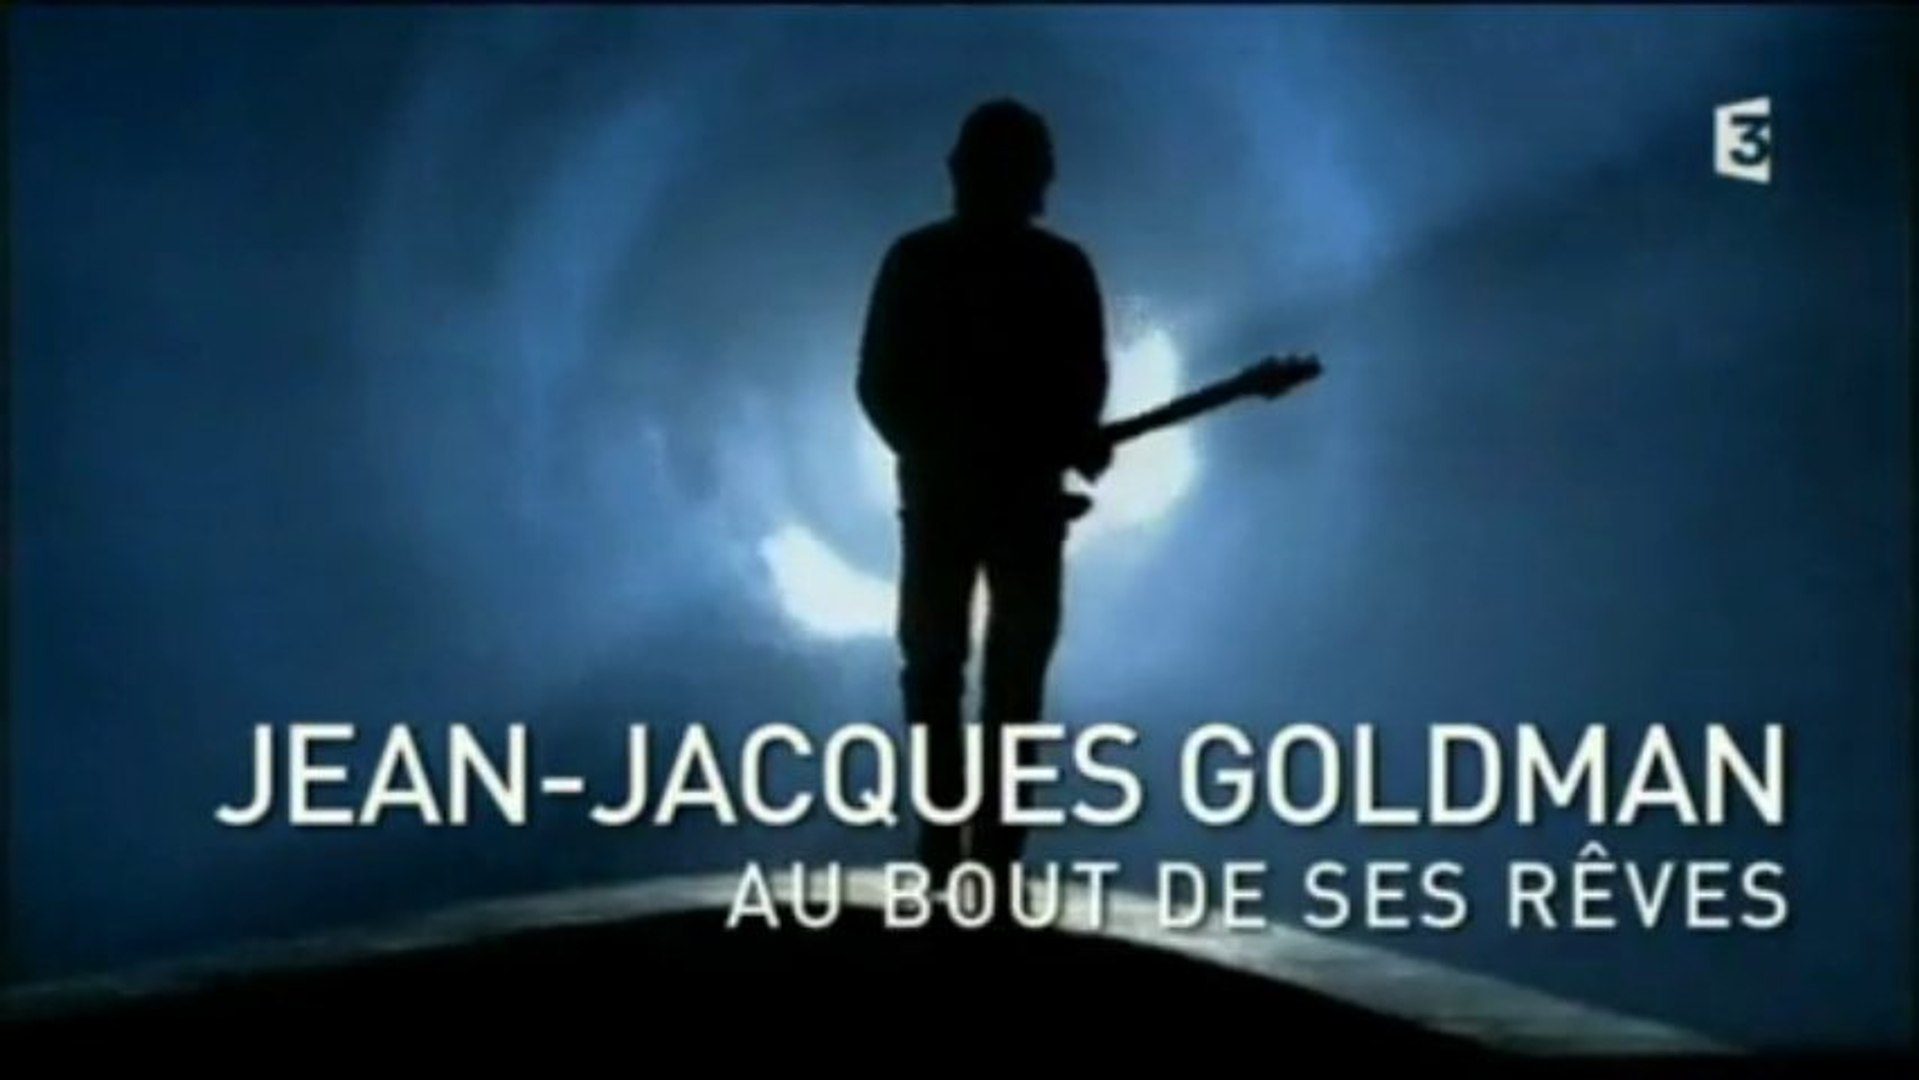 Jean-Jacques Goldman - Au bout de ses rêves part I (F3, 31 décembre 2013) -  Vidéo Dailymotion